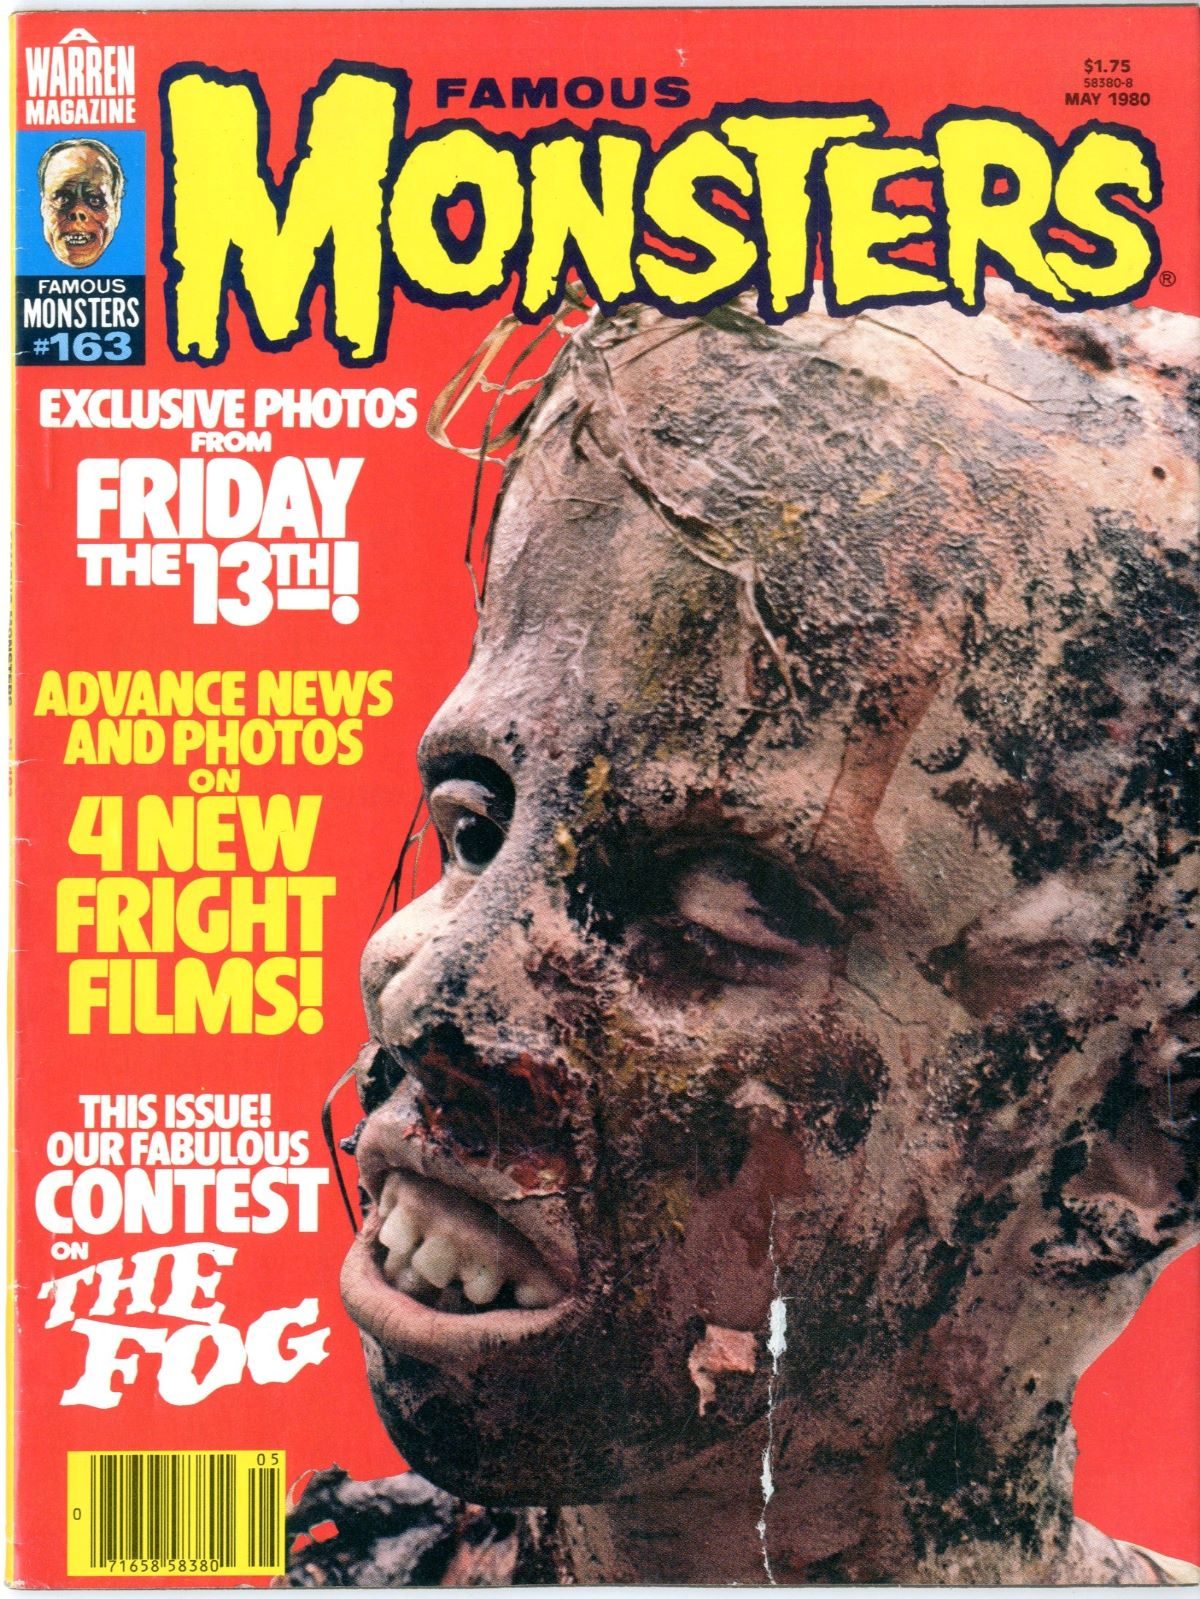 Famous Monsters of Filmland, magazine, horror films, 